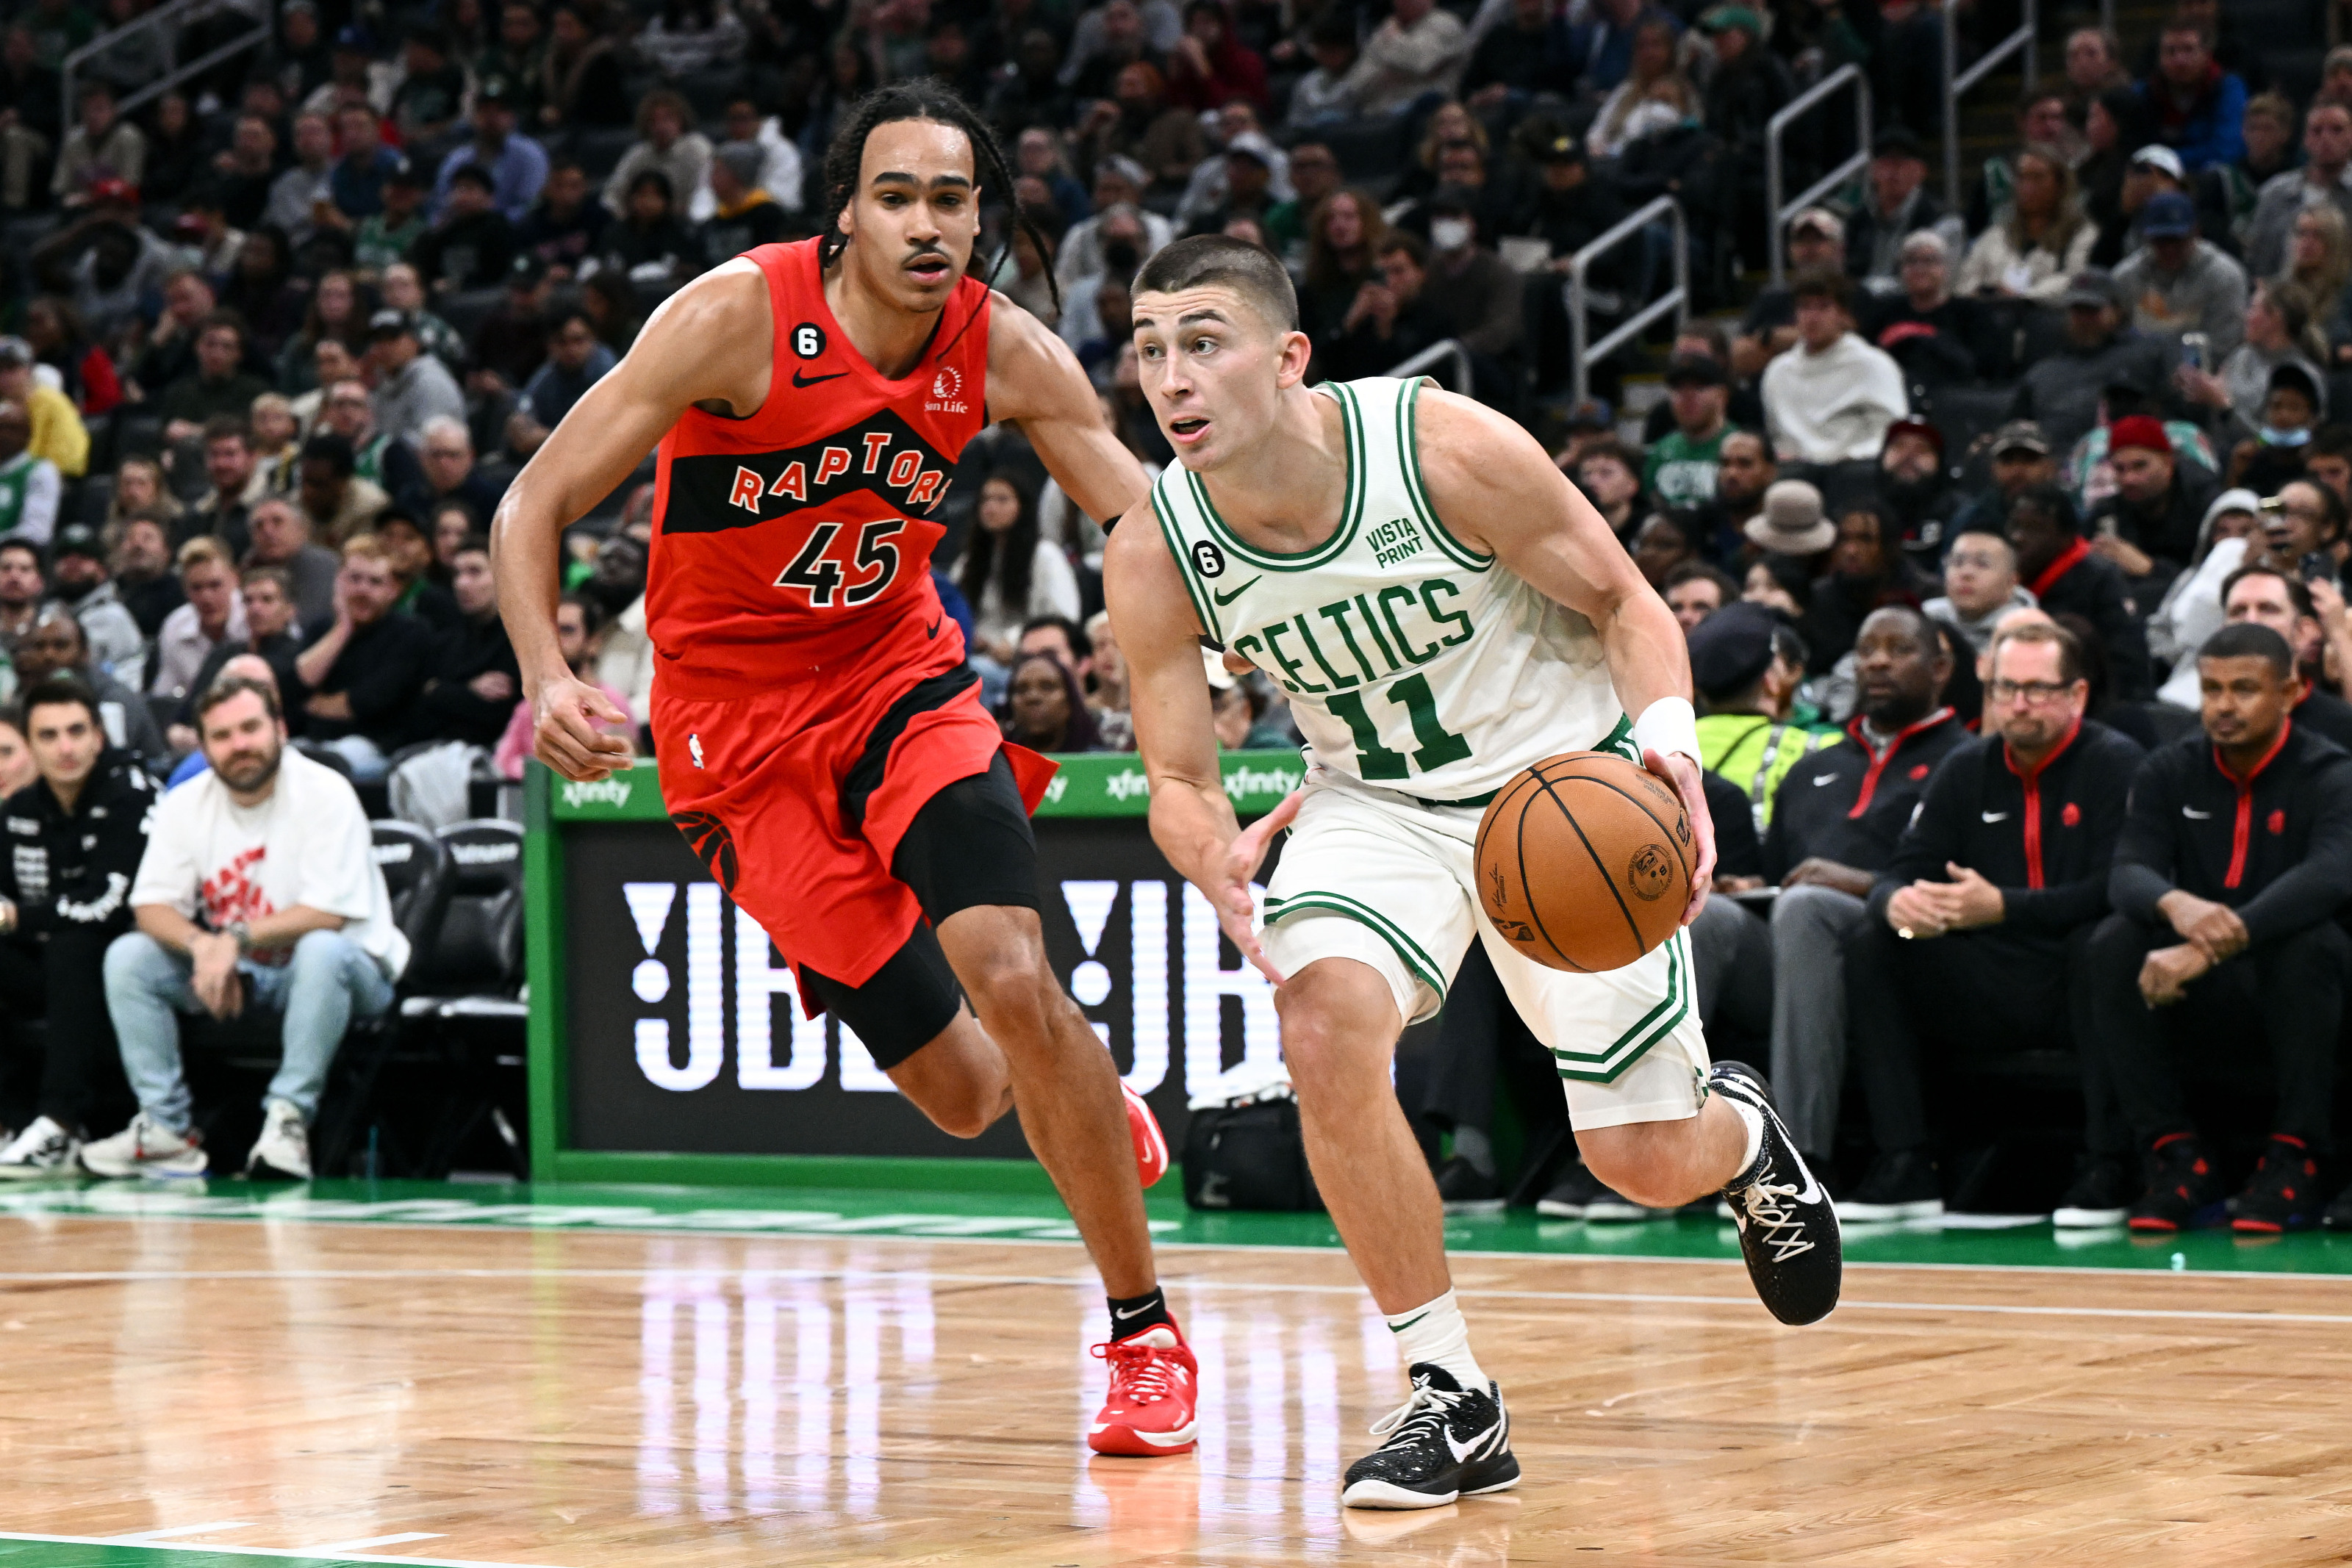 Celtics cruised past the Raptors, eye season finale on Sunday